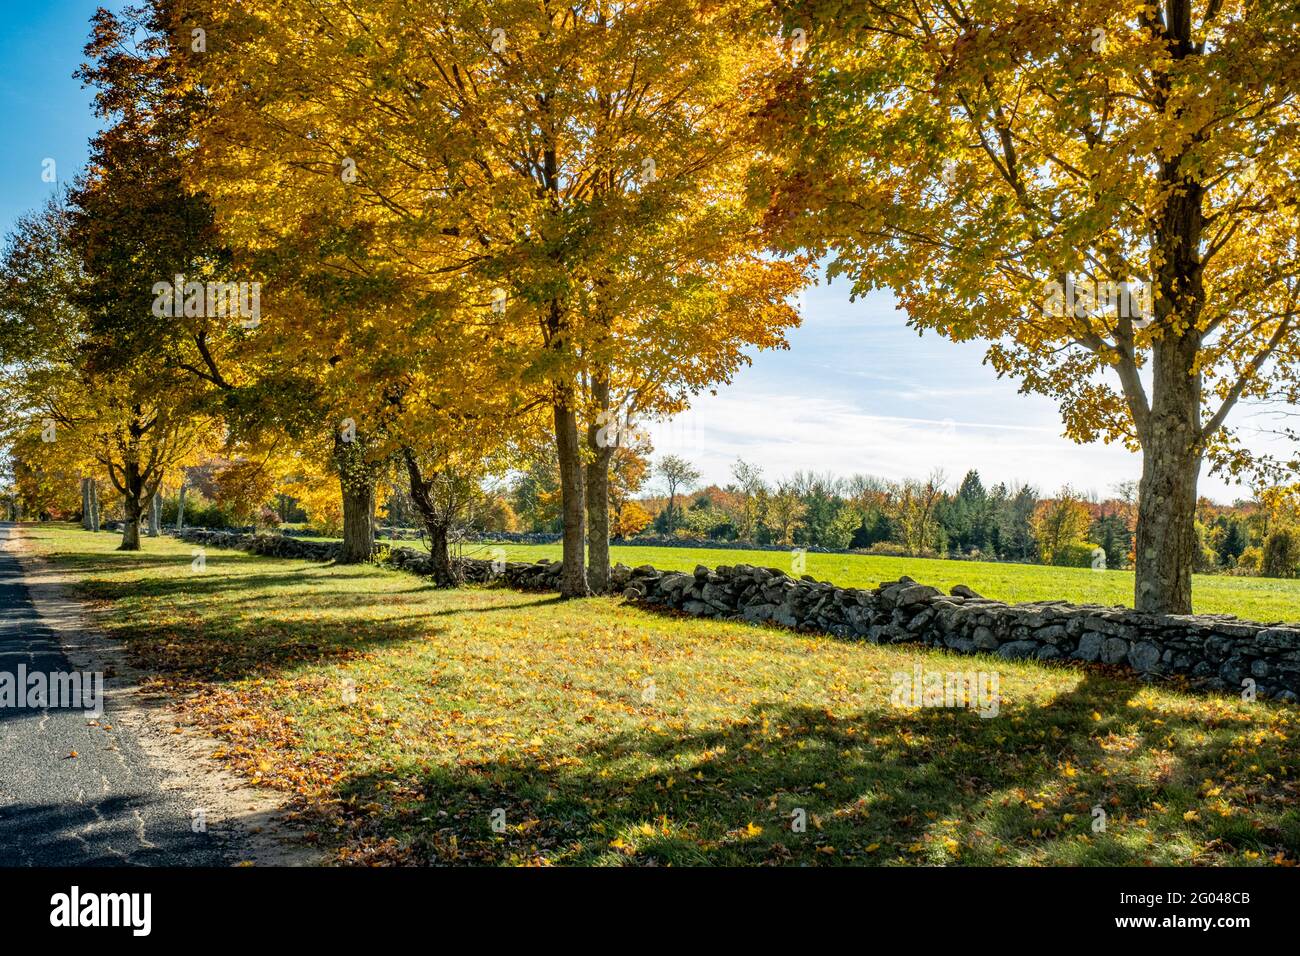 Trees in full fall color on Upper Church Street, Hardwick, Massachusetts Stock Photo